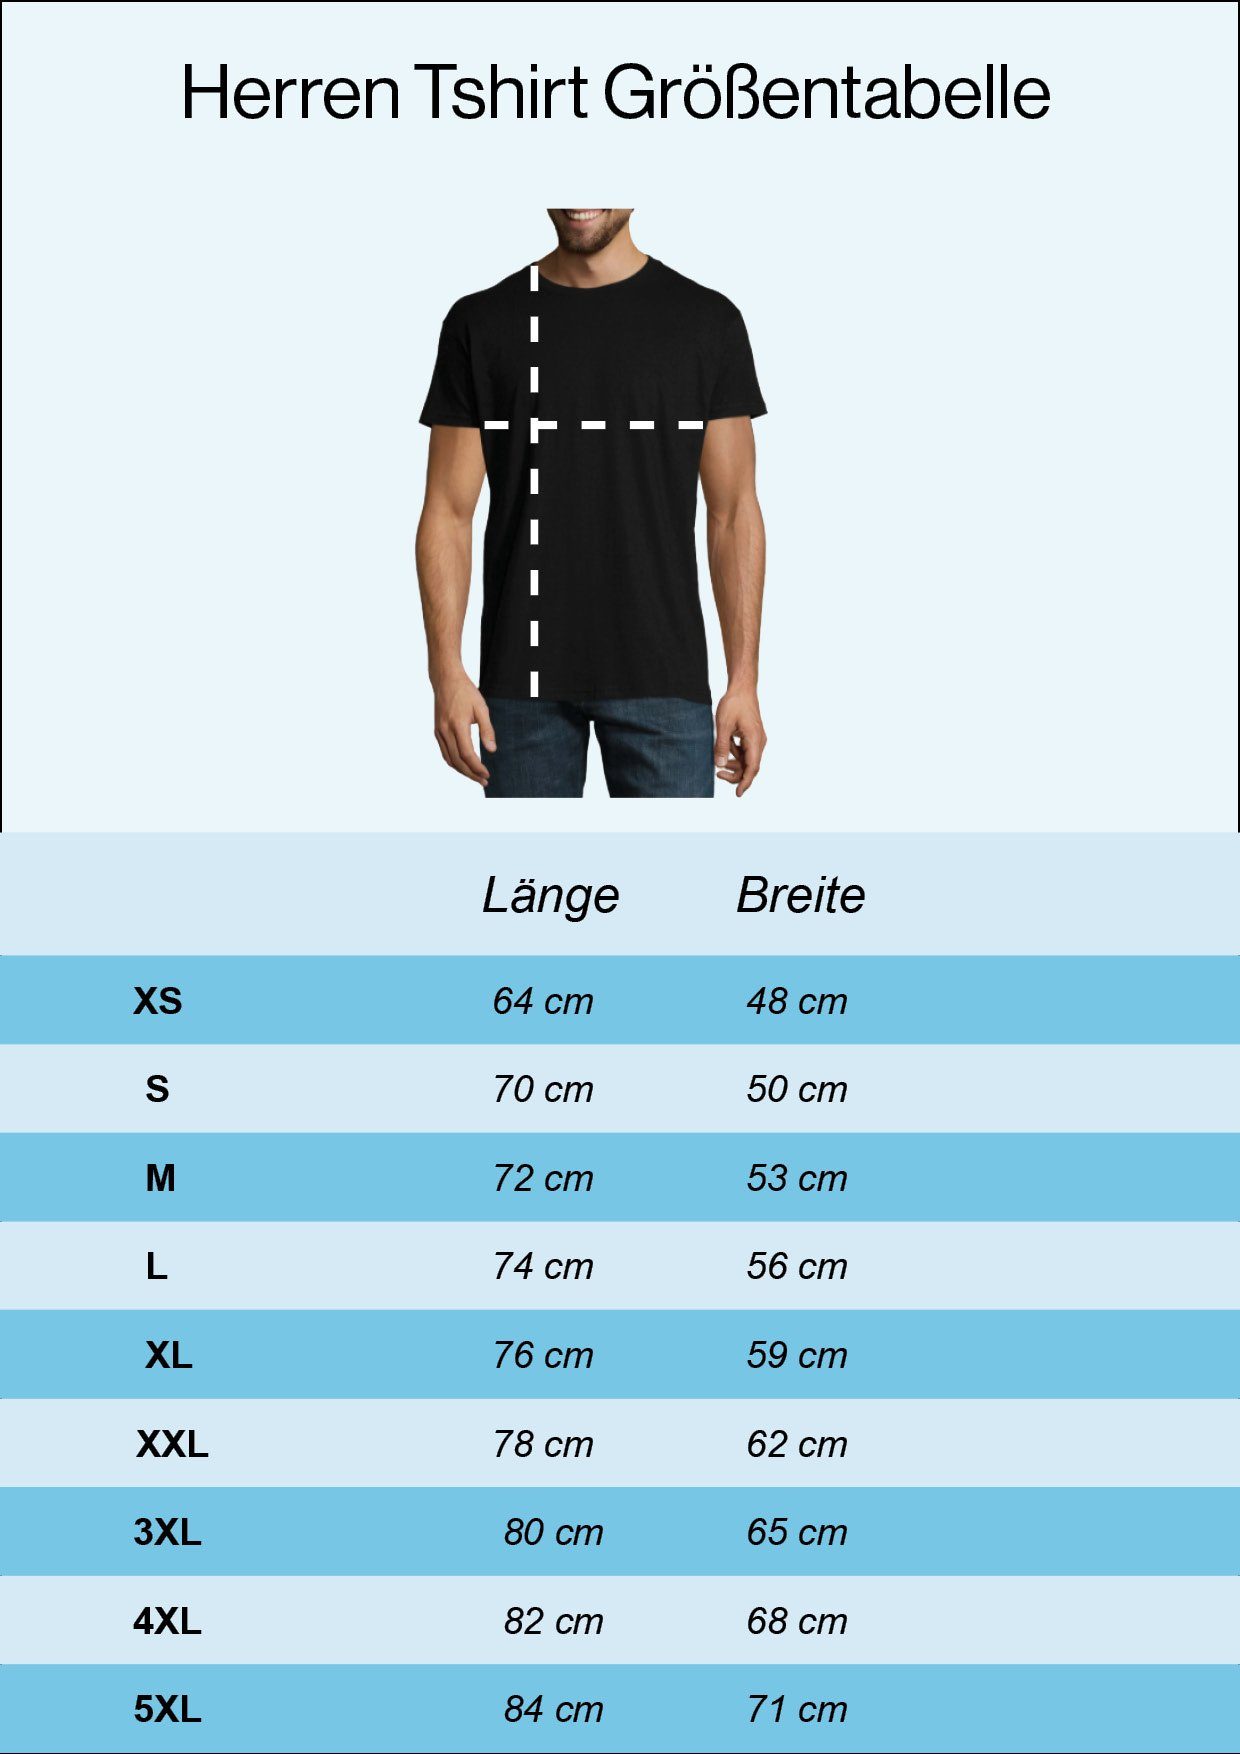 Frontdruck geht Designz in Herren Rente mit Trendigem Burgund Youth Die T-Shirt Shirt Legende